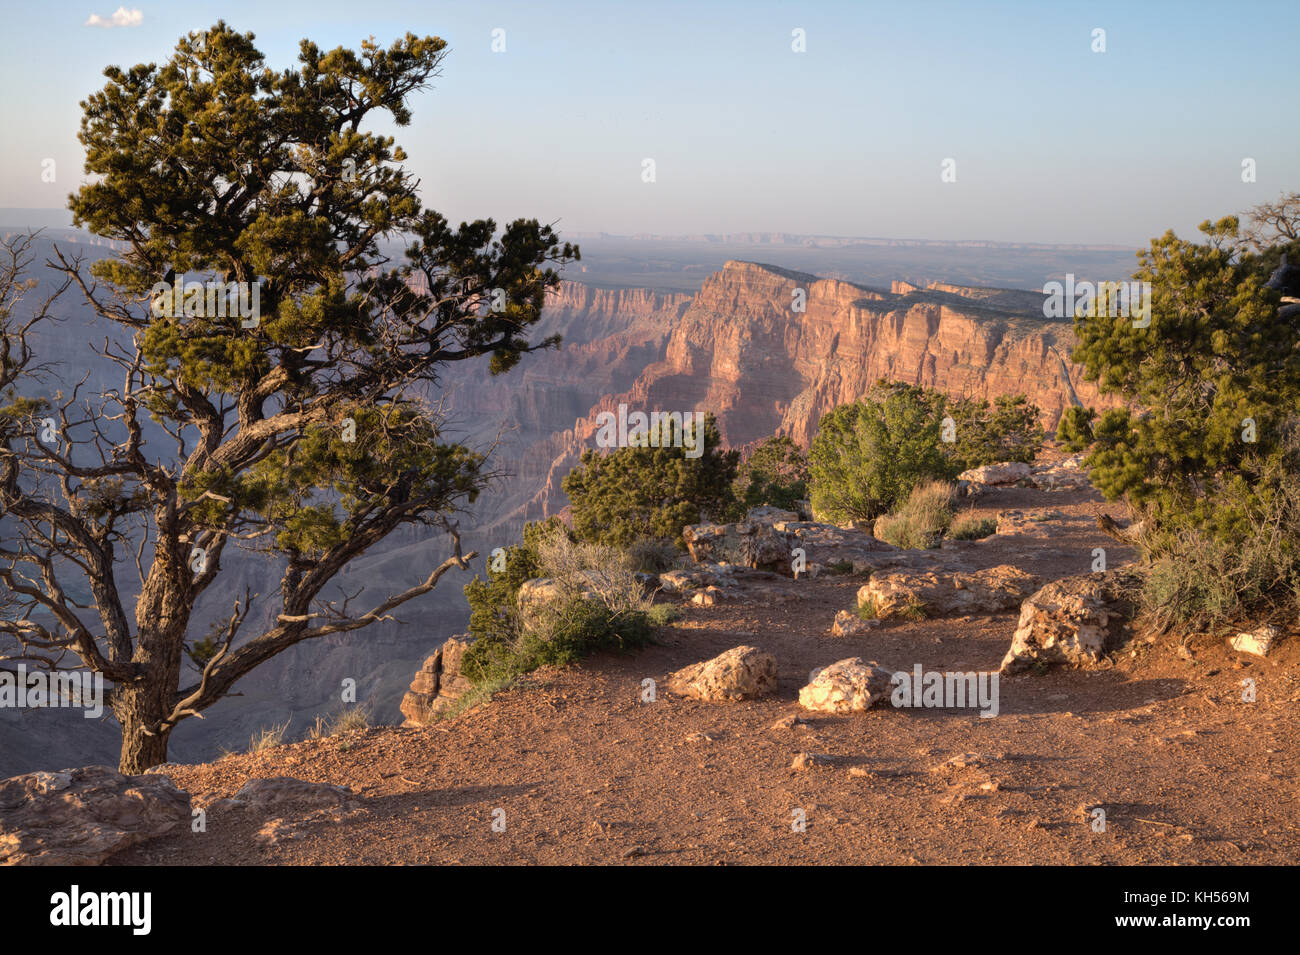 Den Grand Canyon gesehen von der Felge in der Nähe der Wüste Ansicht Besucherzentrum Stockfoto